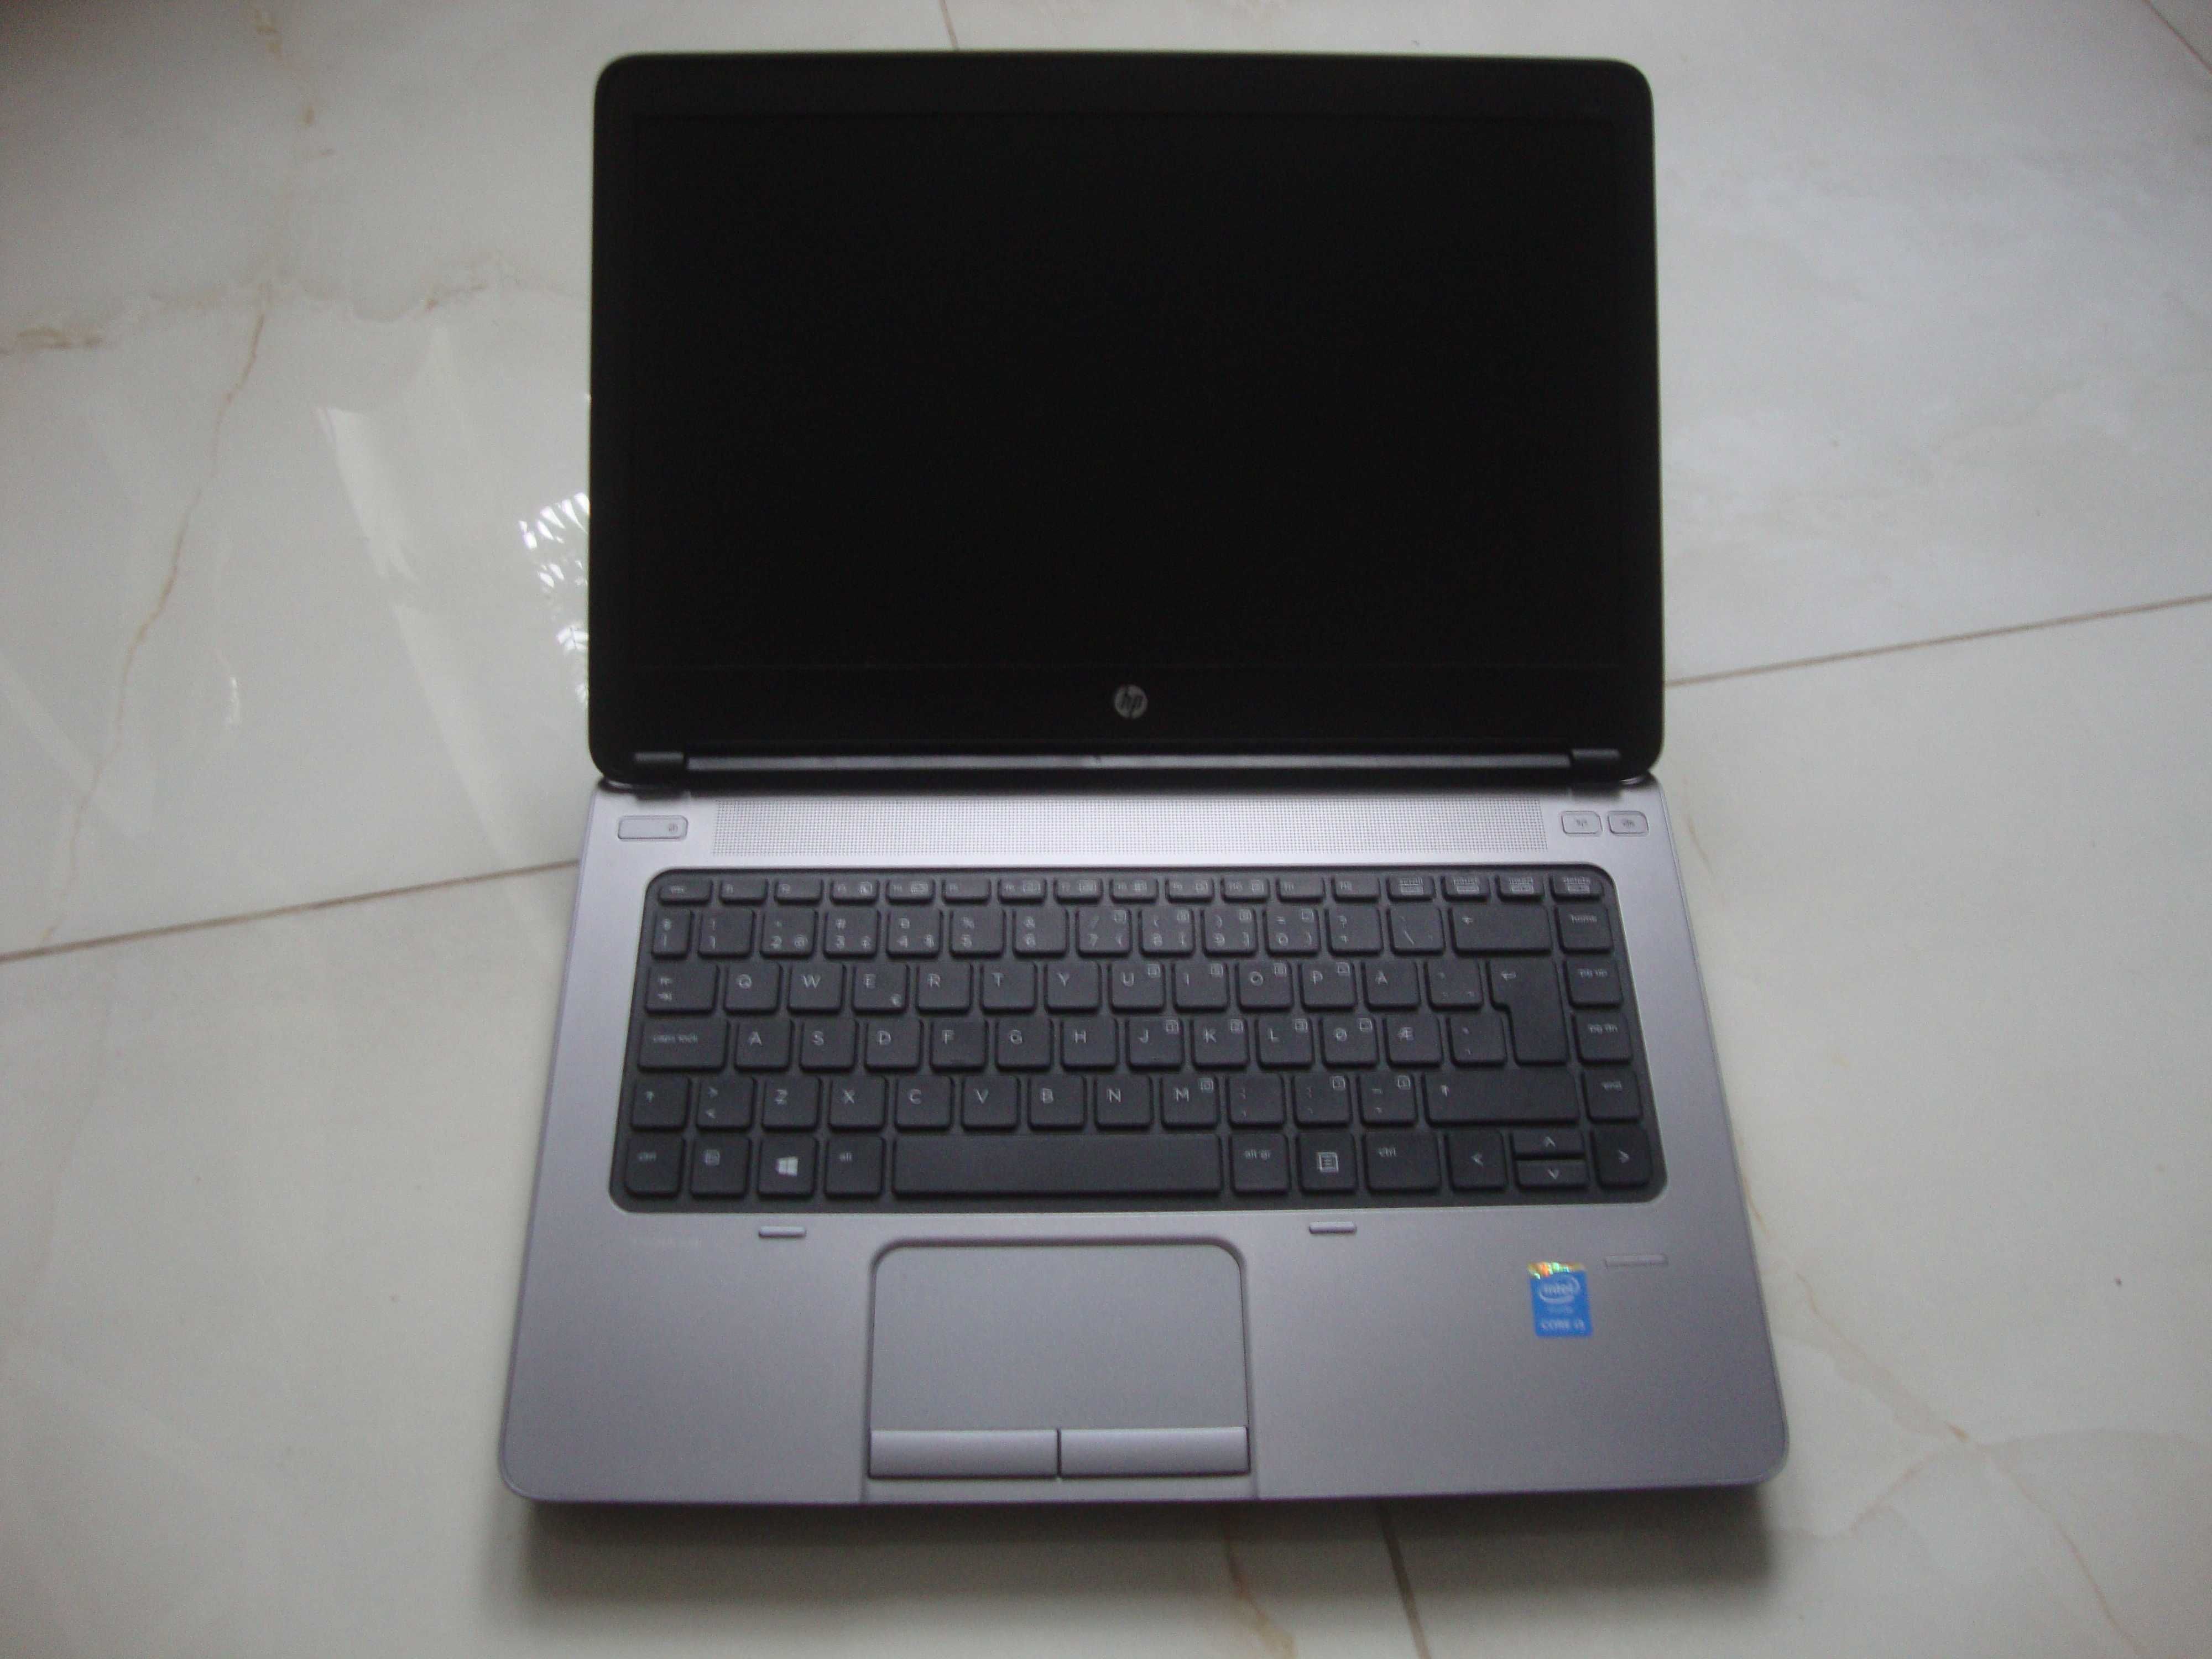 HP ProBook 640 G1 i3-4000M/4gb/320gb Bdb Stan Okazja!!!